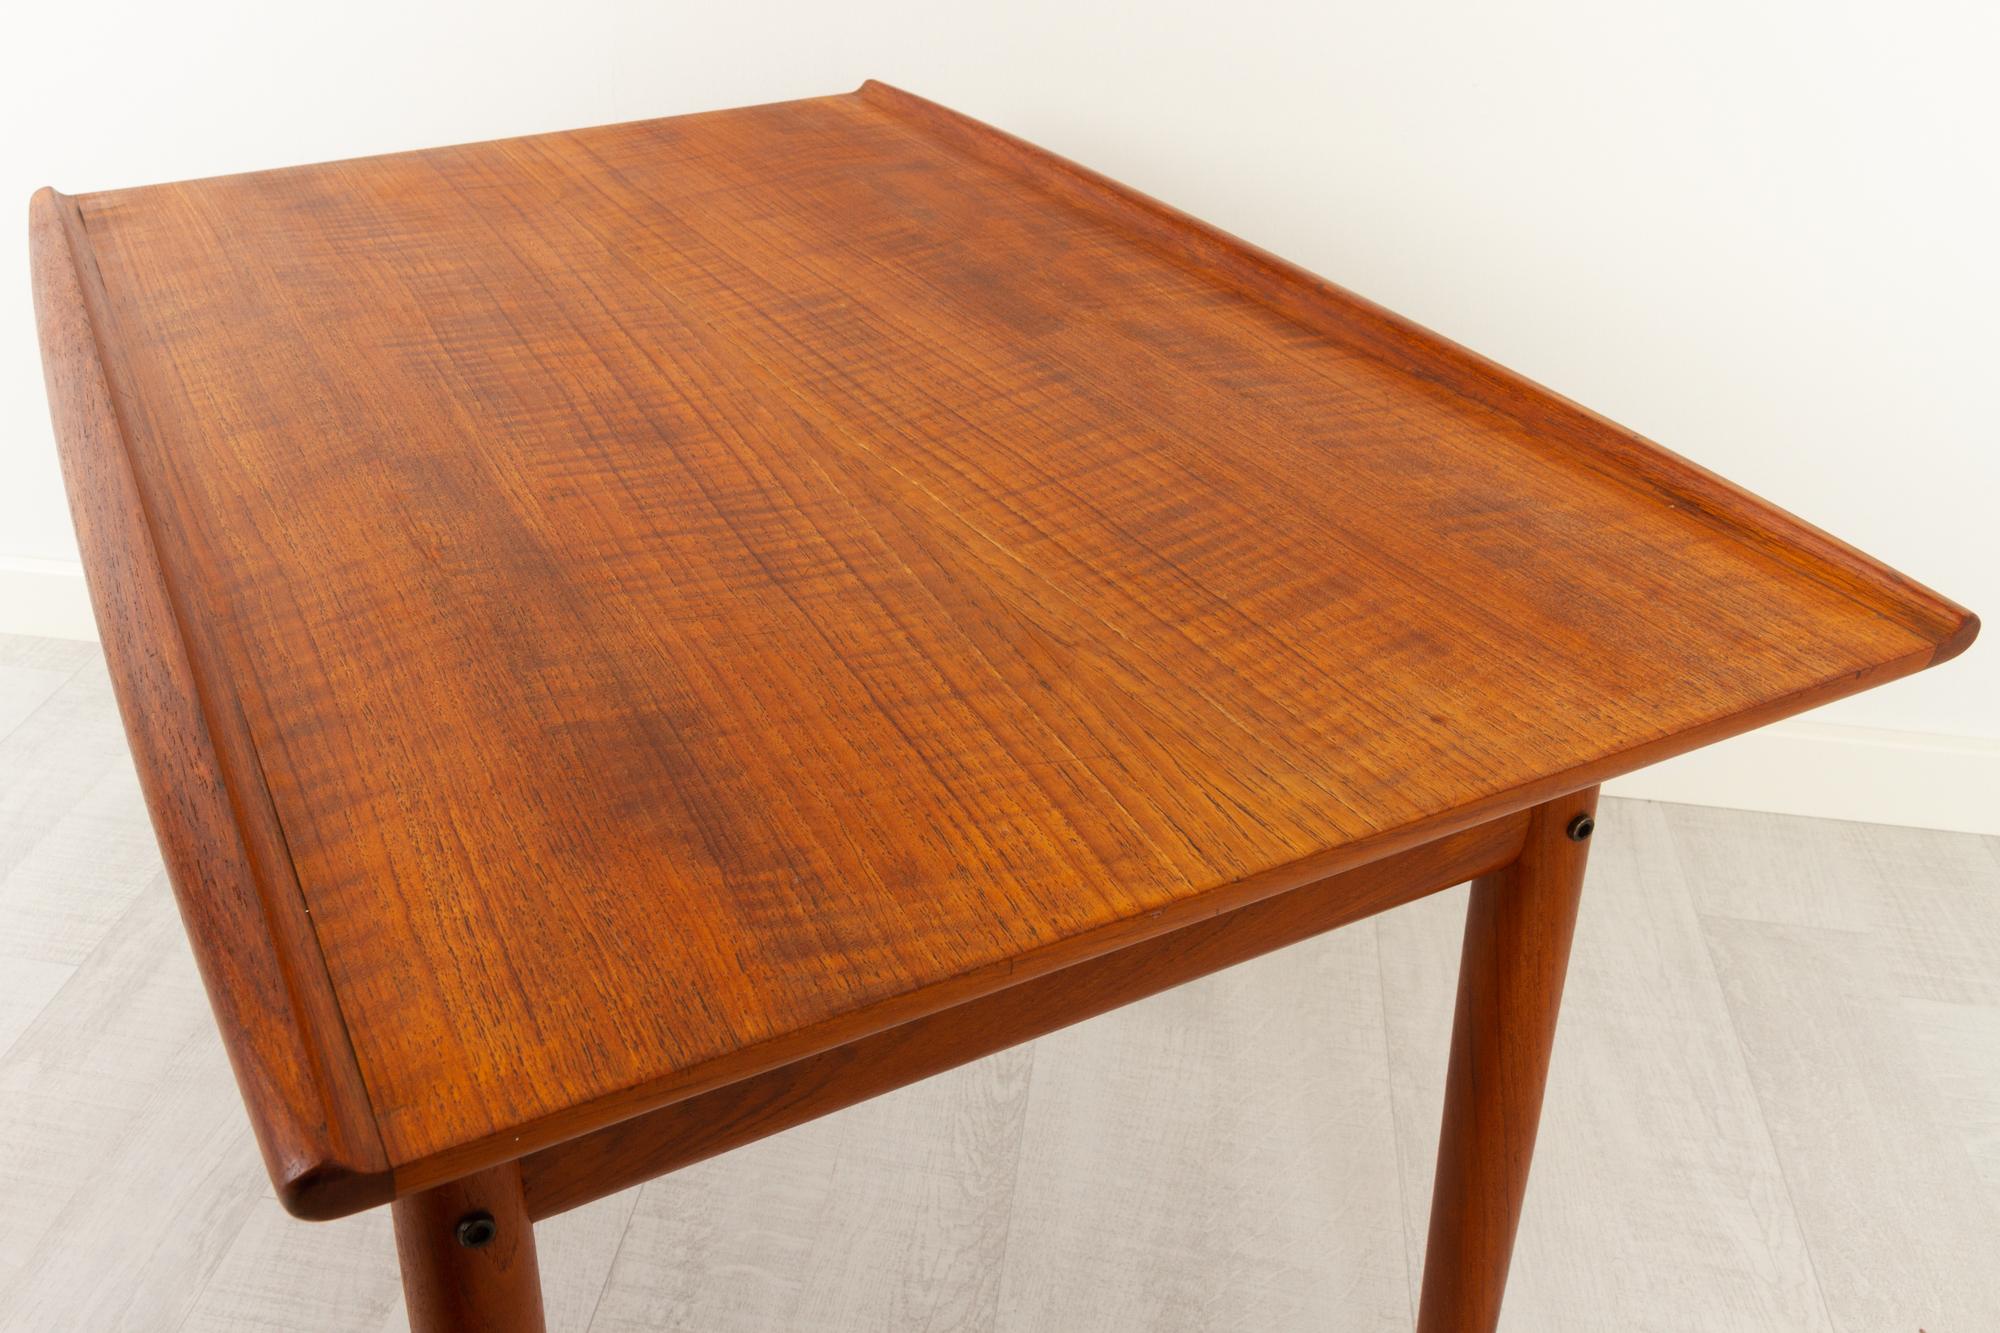 Vintage Danish Teak Side Table by Grete Jalk for Glostrup Møbelfabrik, 1960s For Sale 7